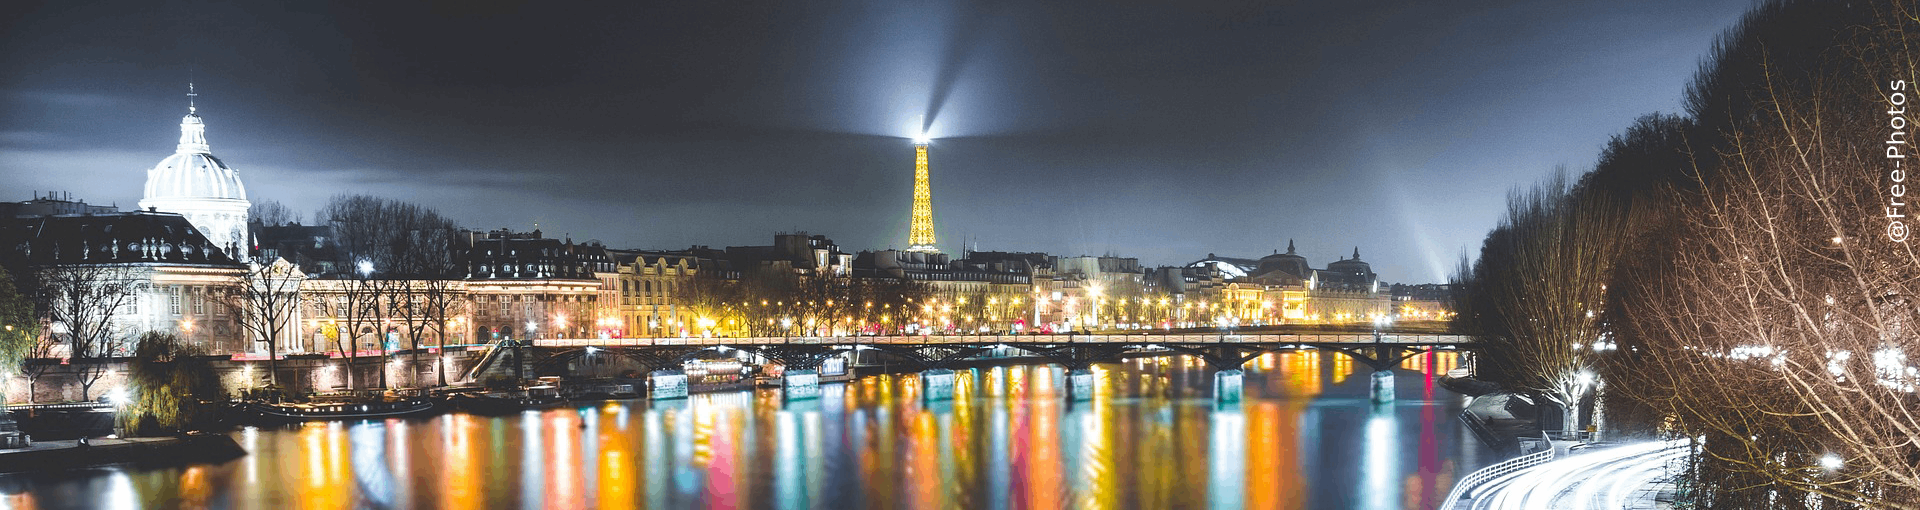 WMNC 2019 - Eiffel